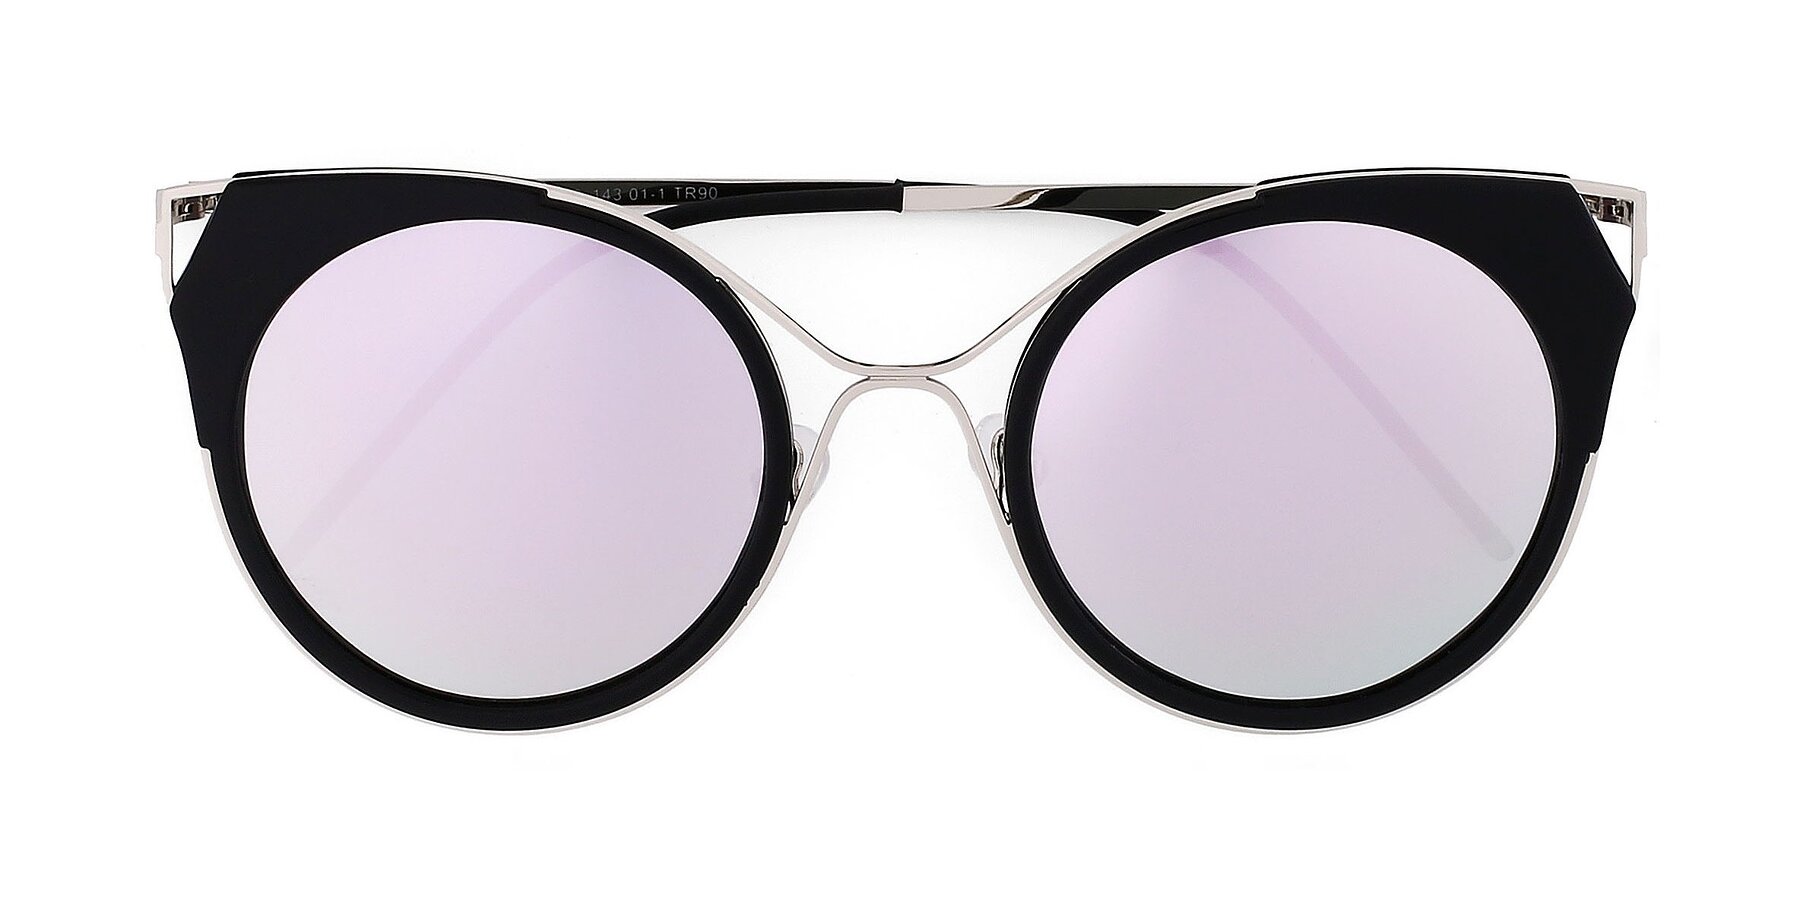 Silver/Black Mirrored Polarized Sunglasses